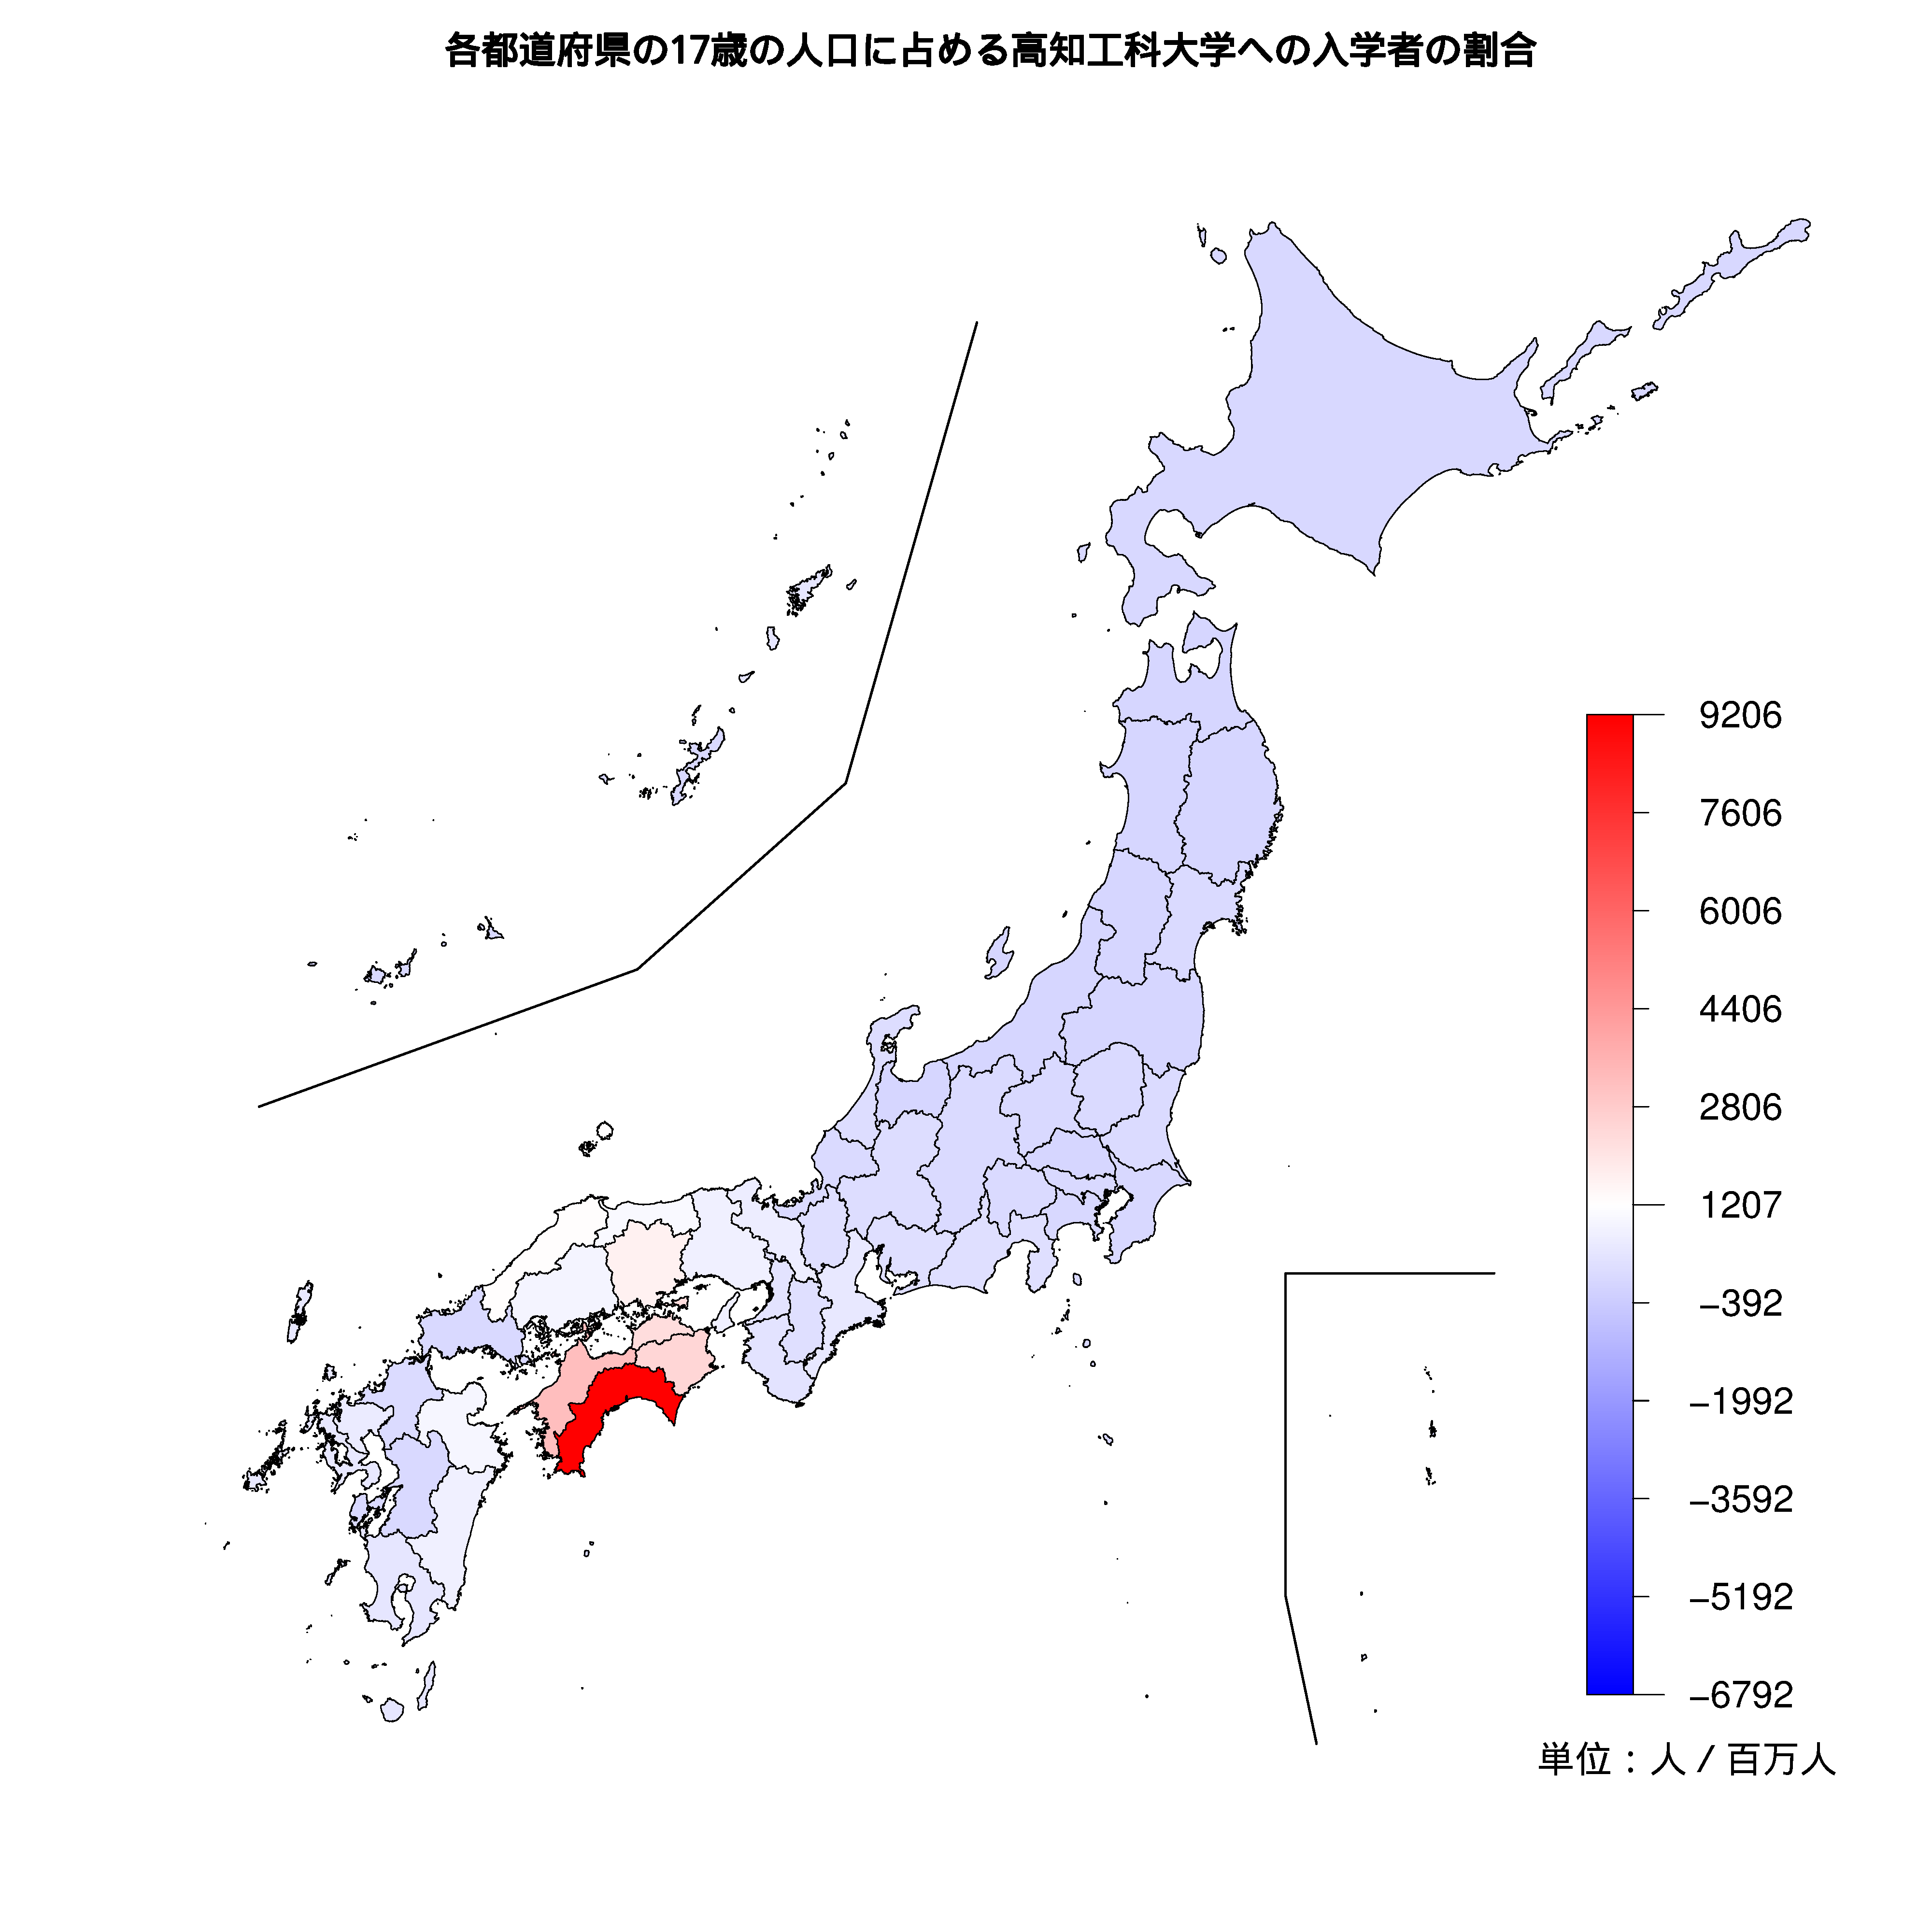 高知工科大学への入学者が多い都道府県の色分け地図